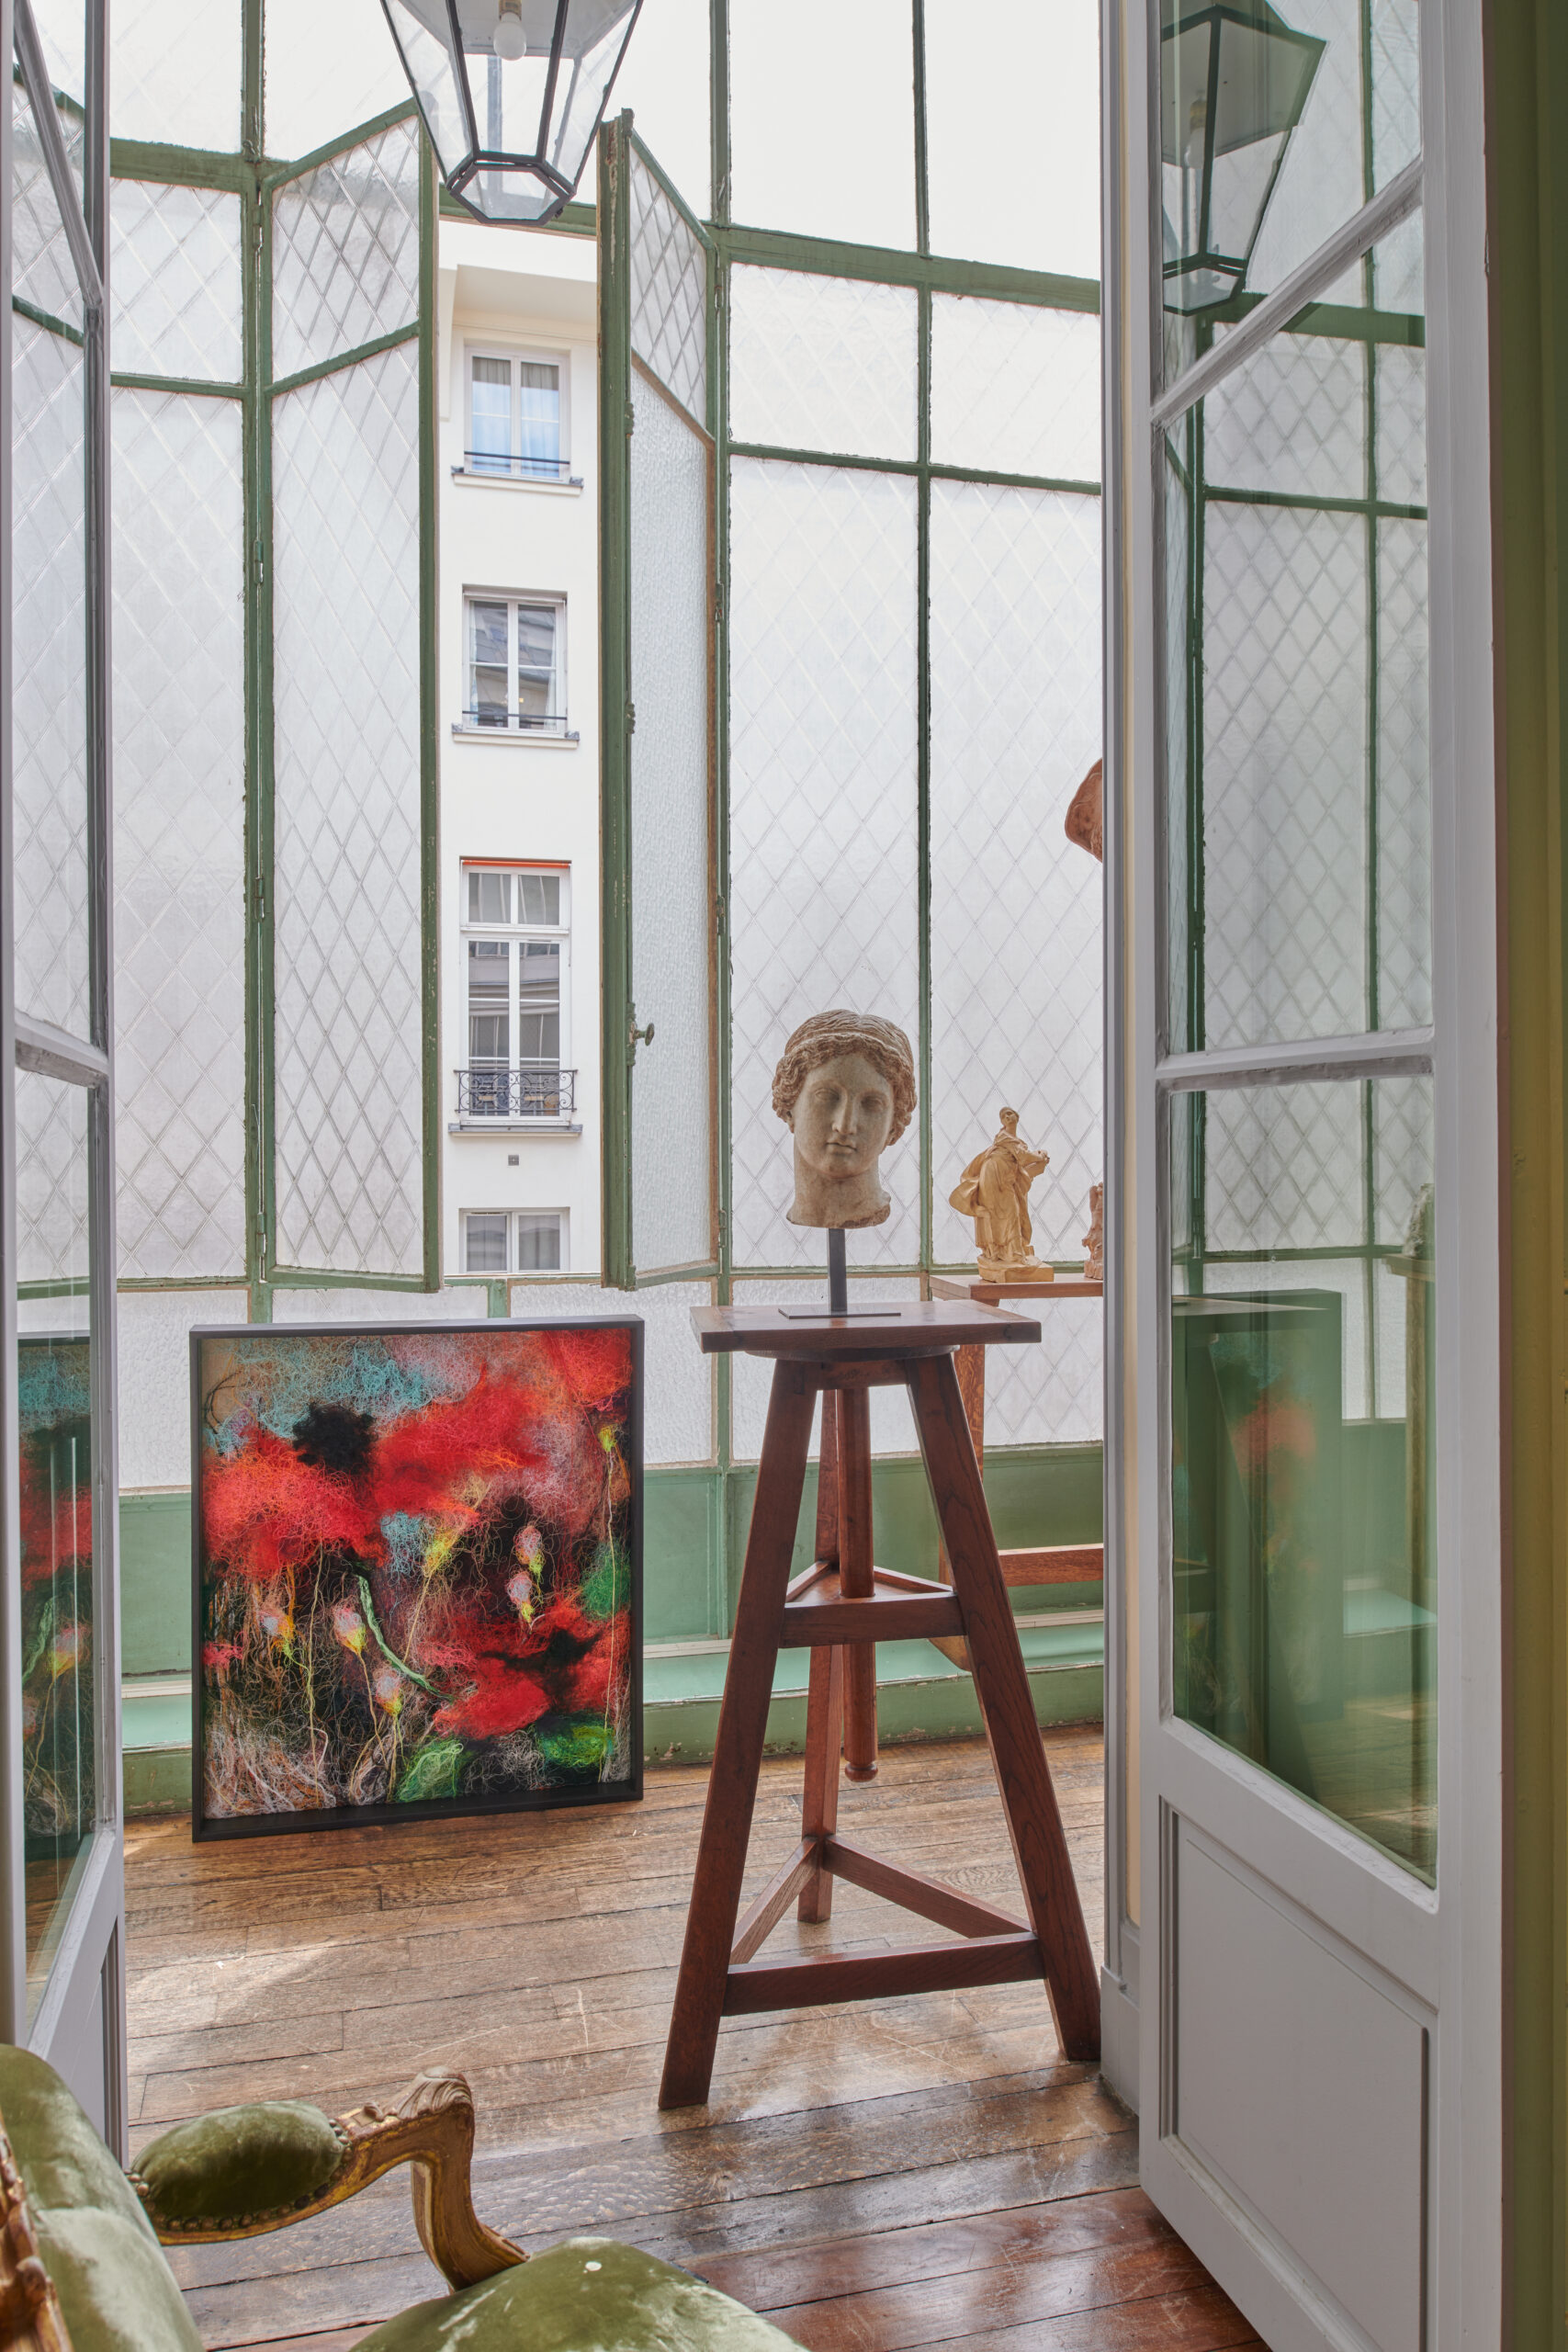 Galerie d'art ancien de Louis de Bayser. Atelier avec une verrière et une sculpture posée sur un tabouret.